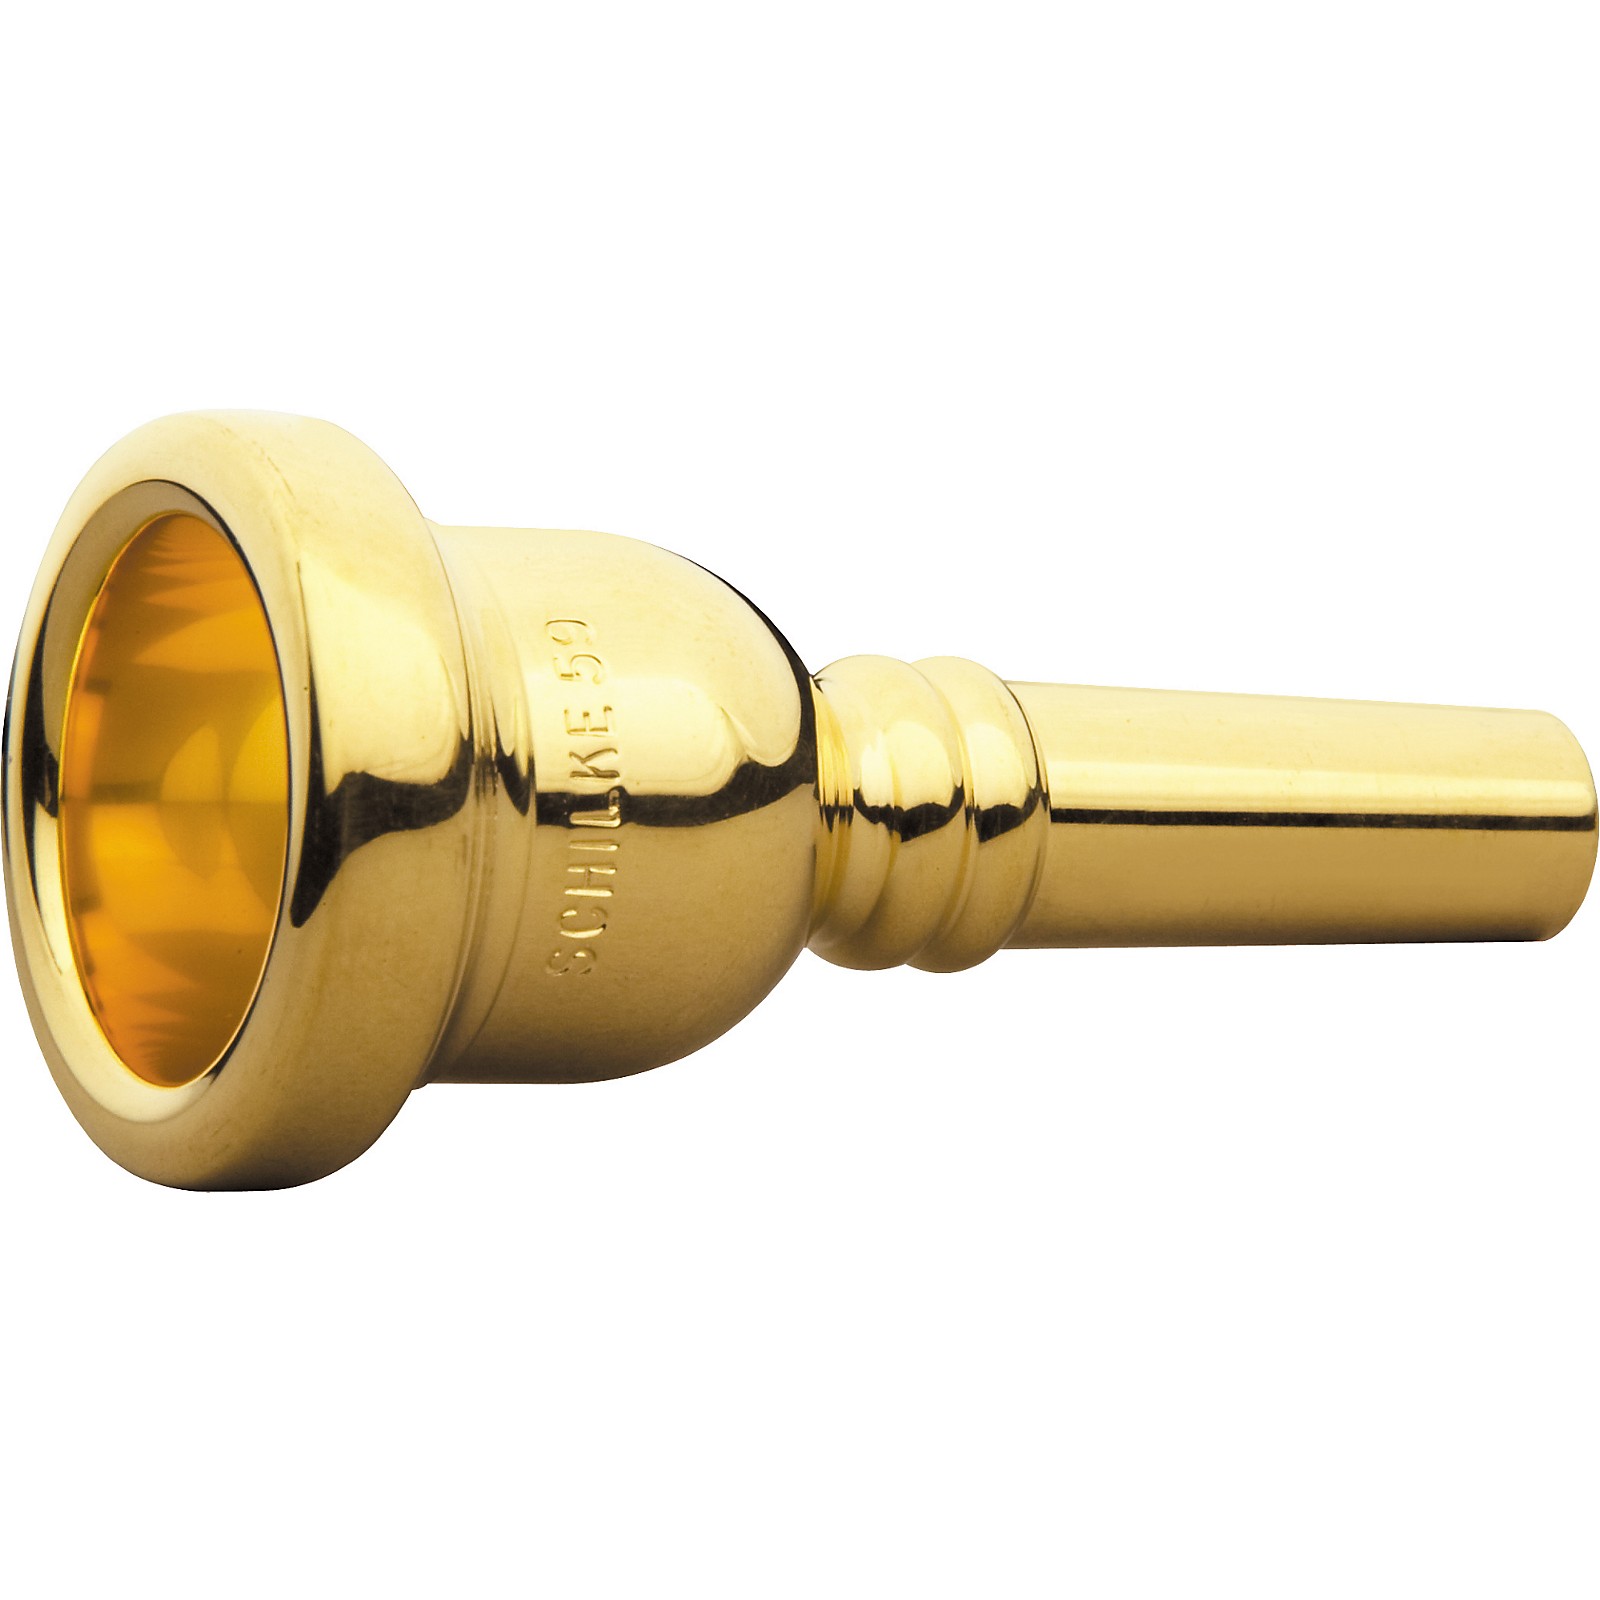 Schilke Standard Series Large Shank Trombone Mouthpiece in Gold 59 Gold